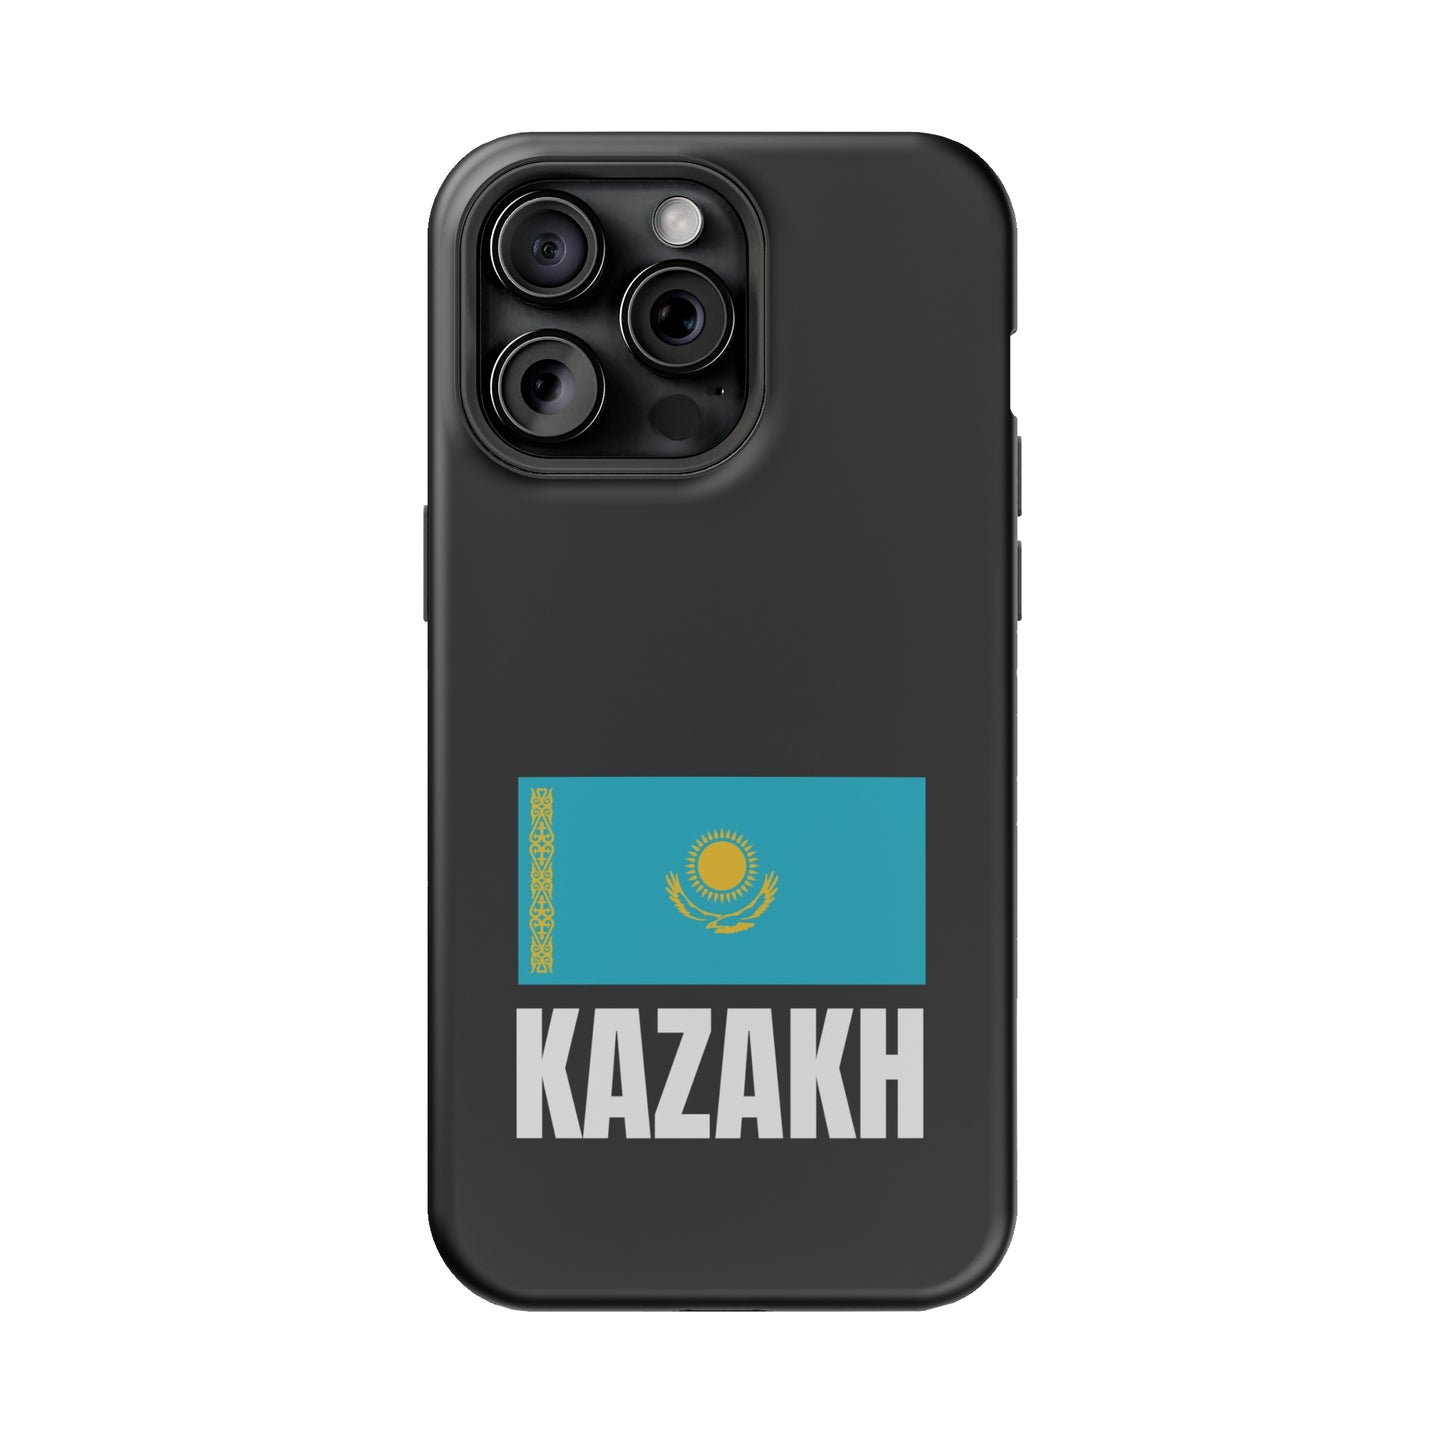 KAZAKH MagSafe Tough Cases